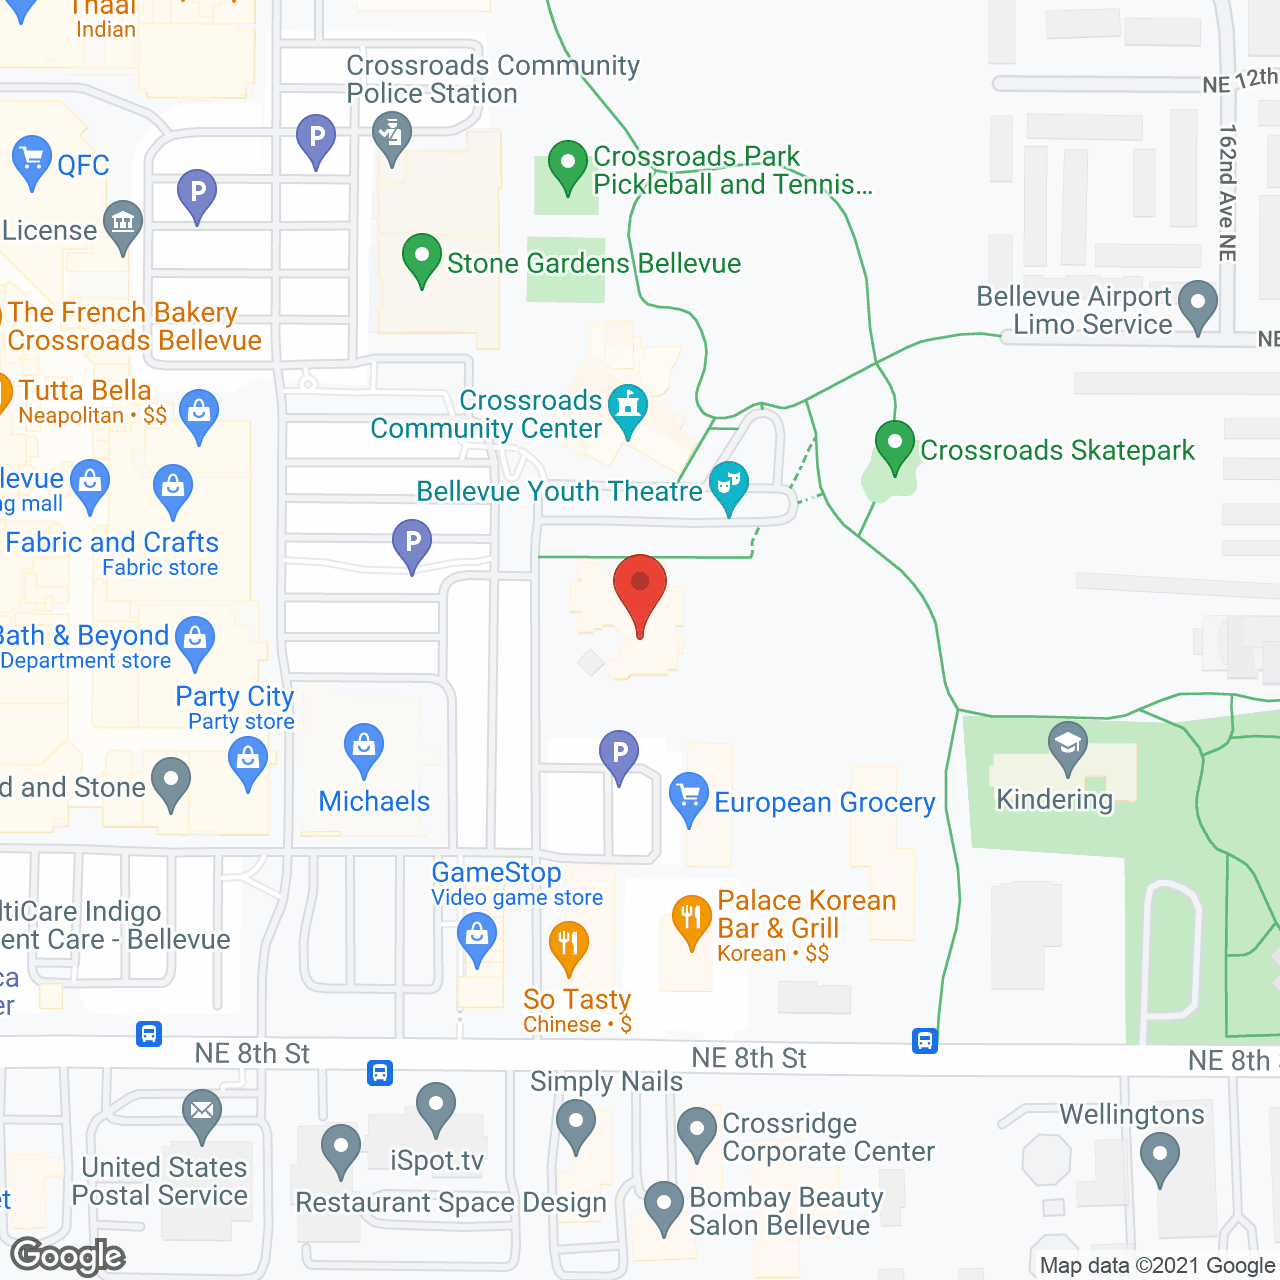 Sunrise of Bellevue in google map